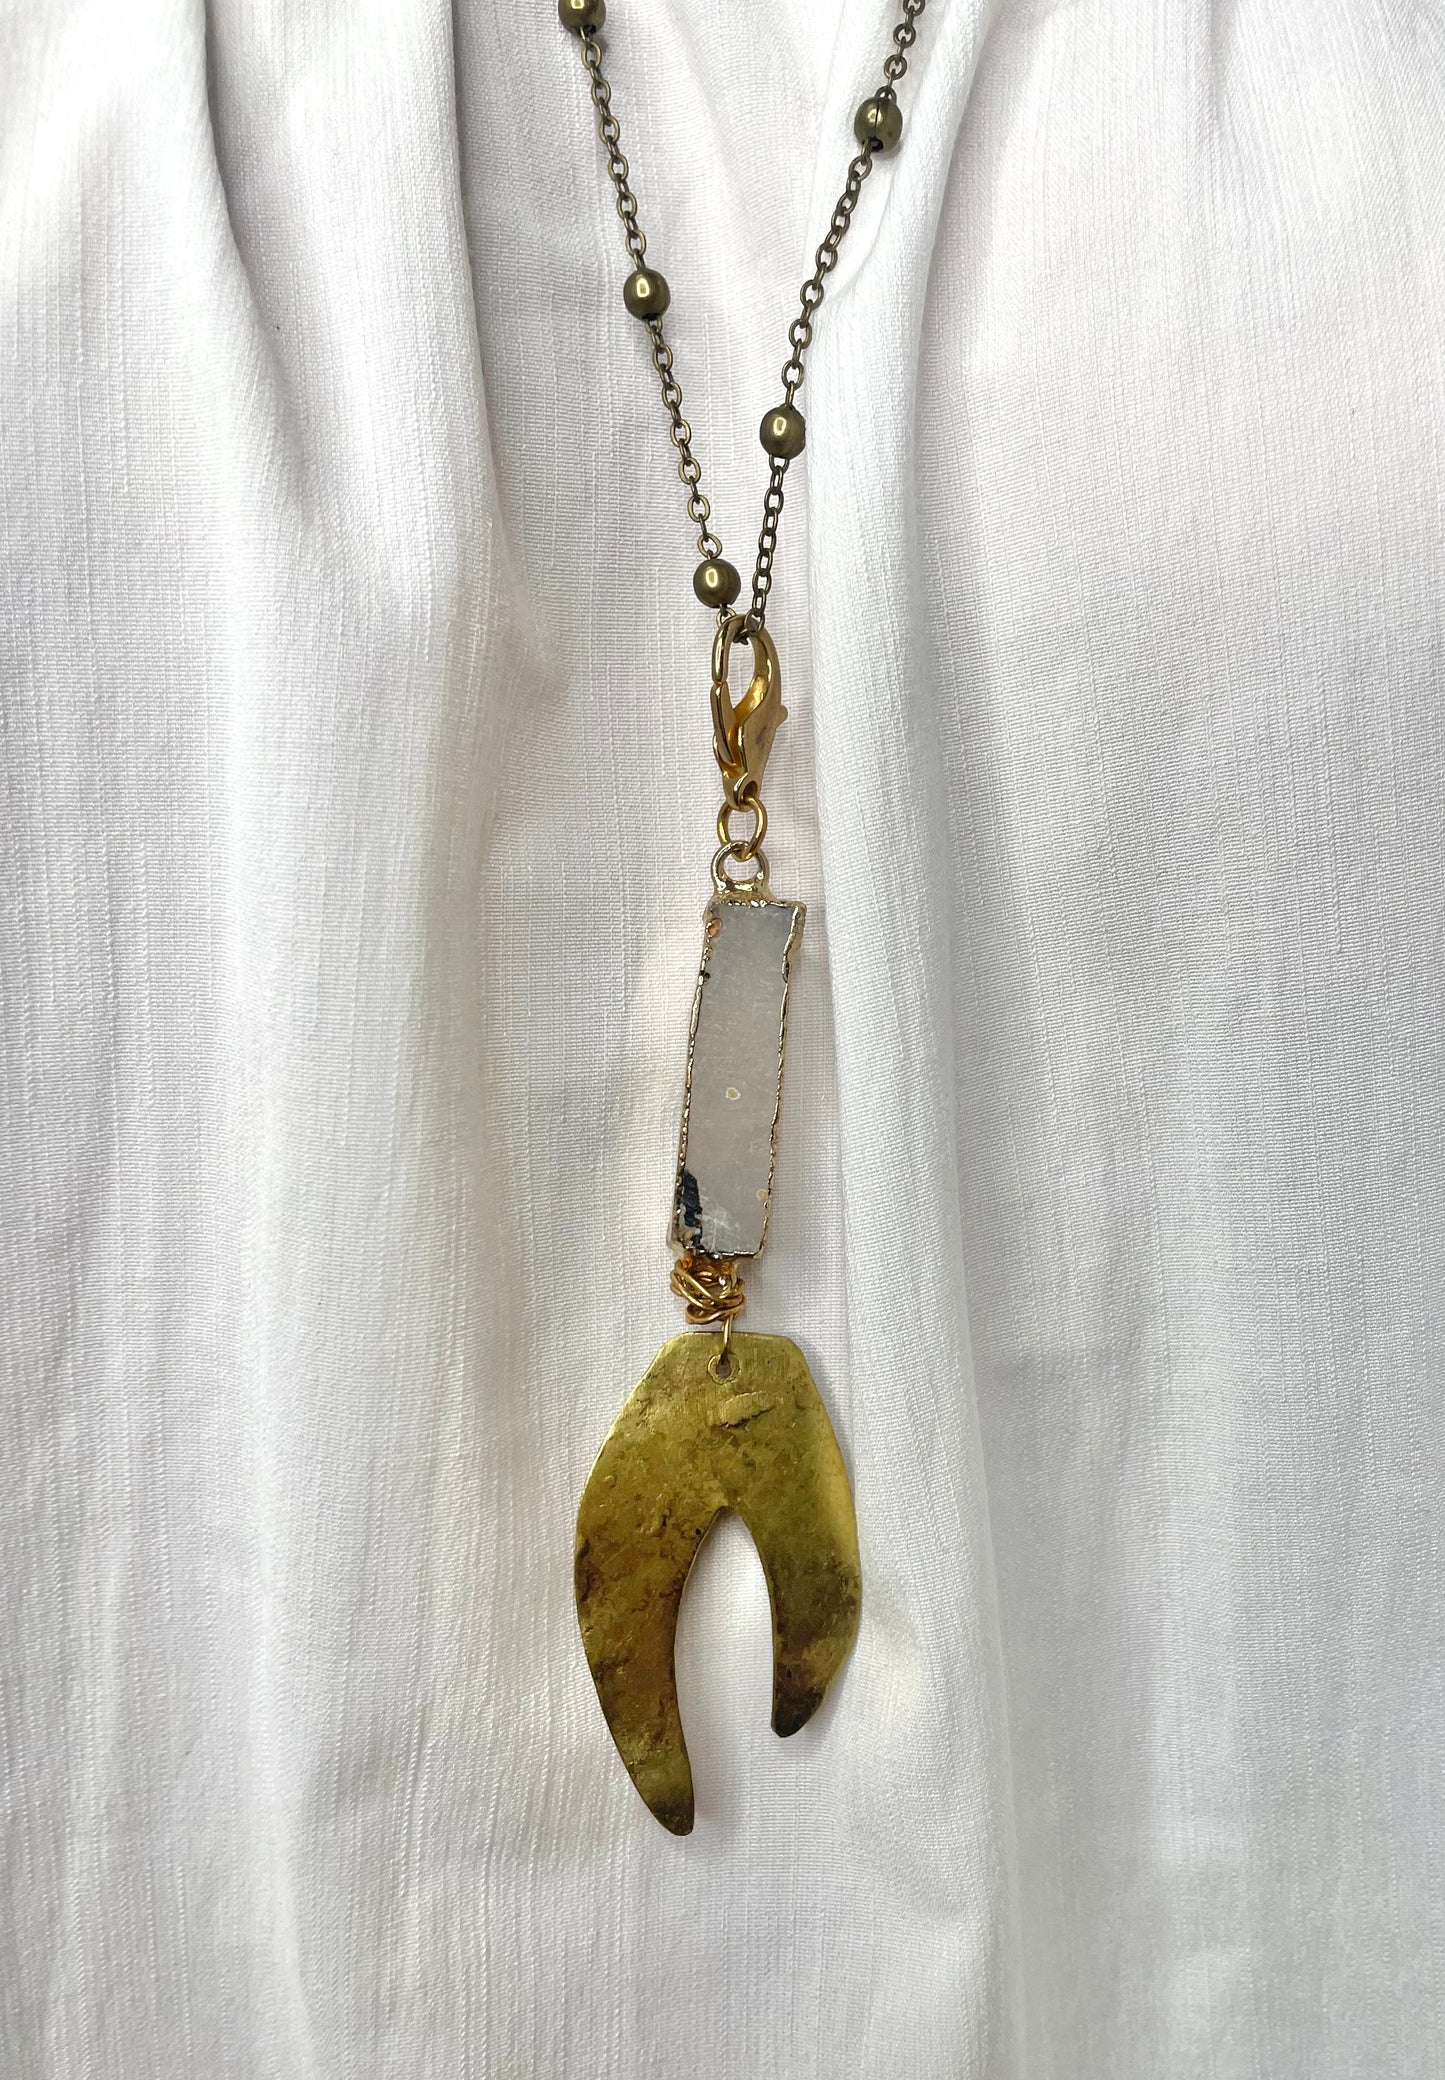 Antique Gold Necklace with Detachable Pendant